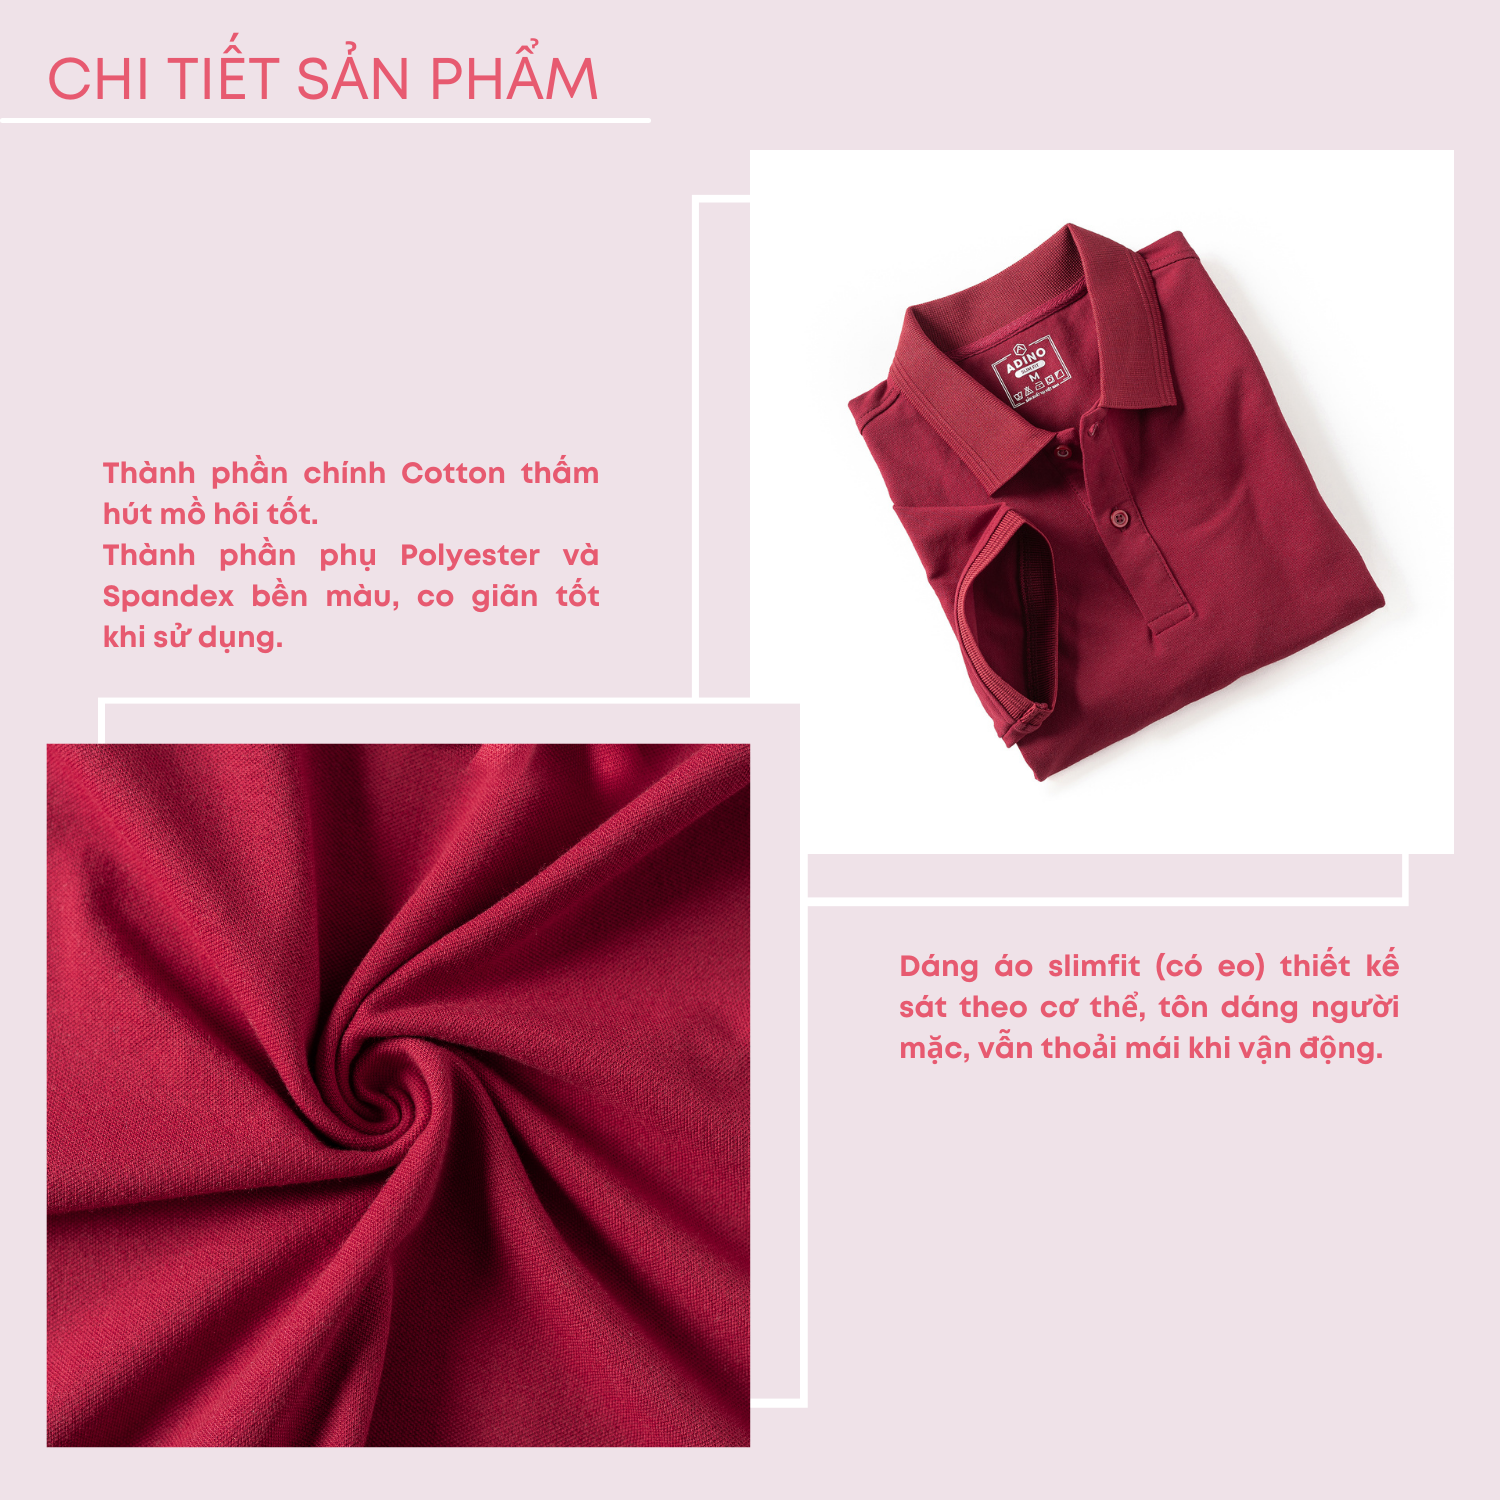 Áo polo nữ màu đỏ đô phối viền chìm ADINO vải cotton polyester mềm dáng slimfit công sở hơi ôm trẻ trung APN03